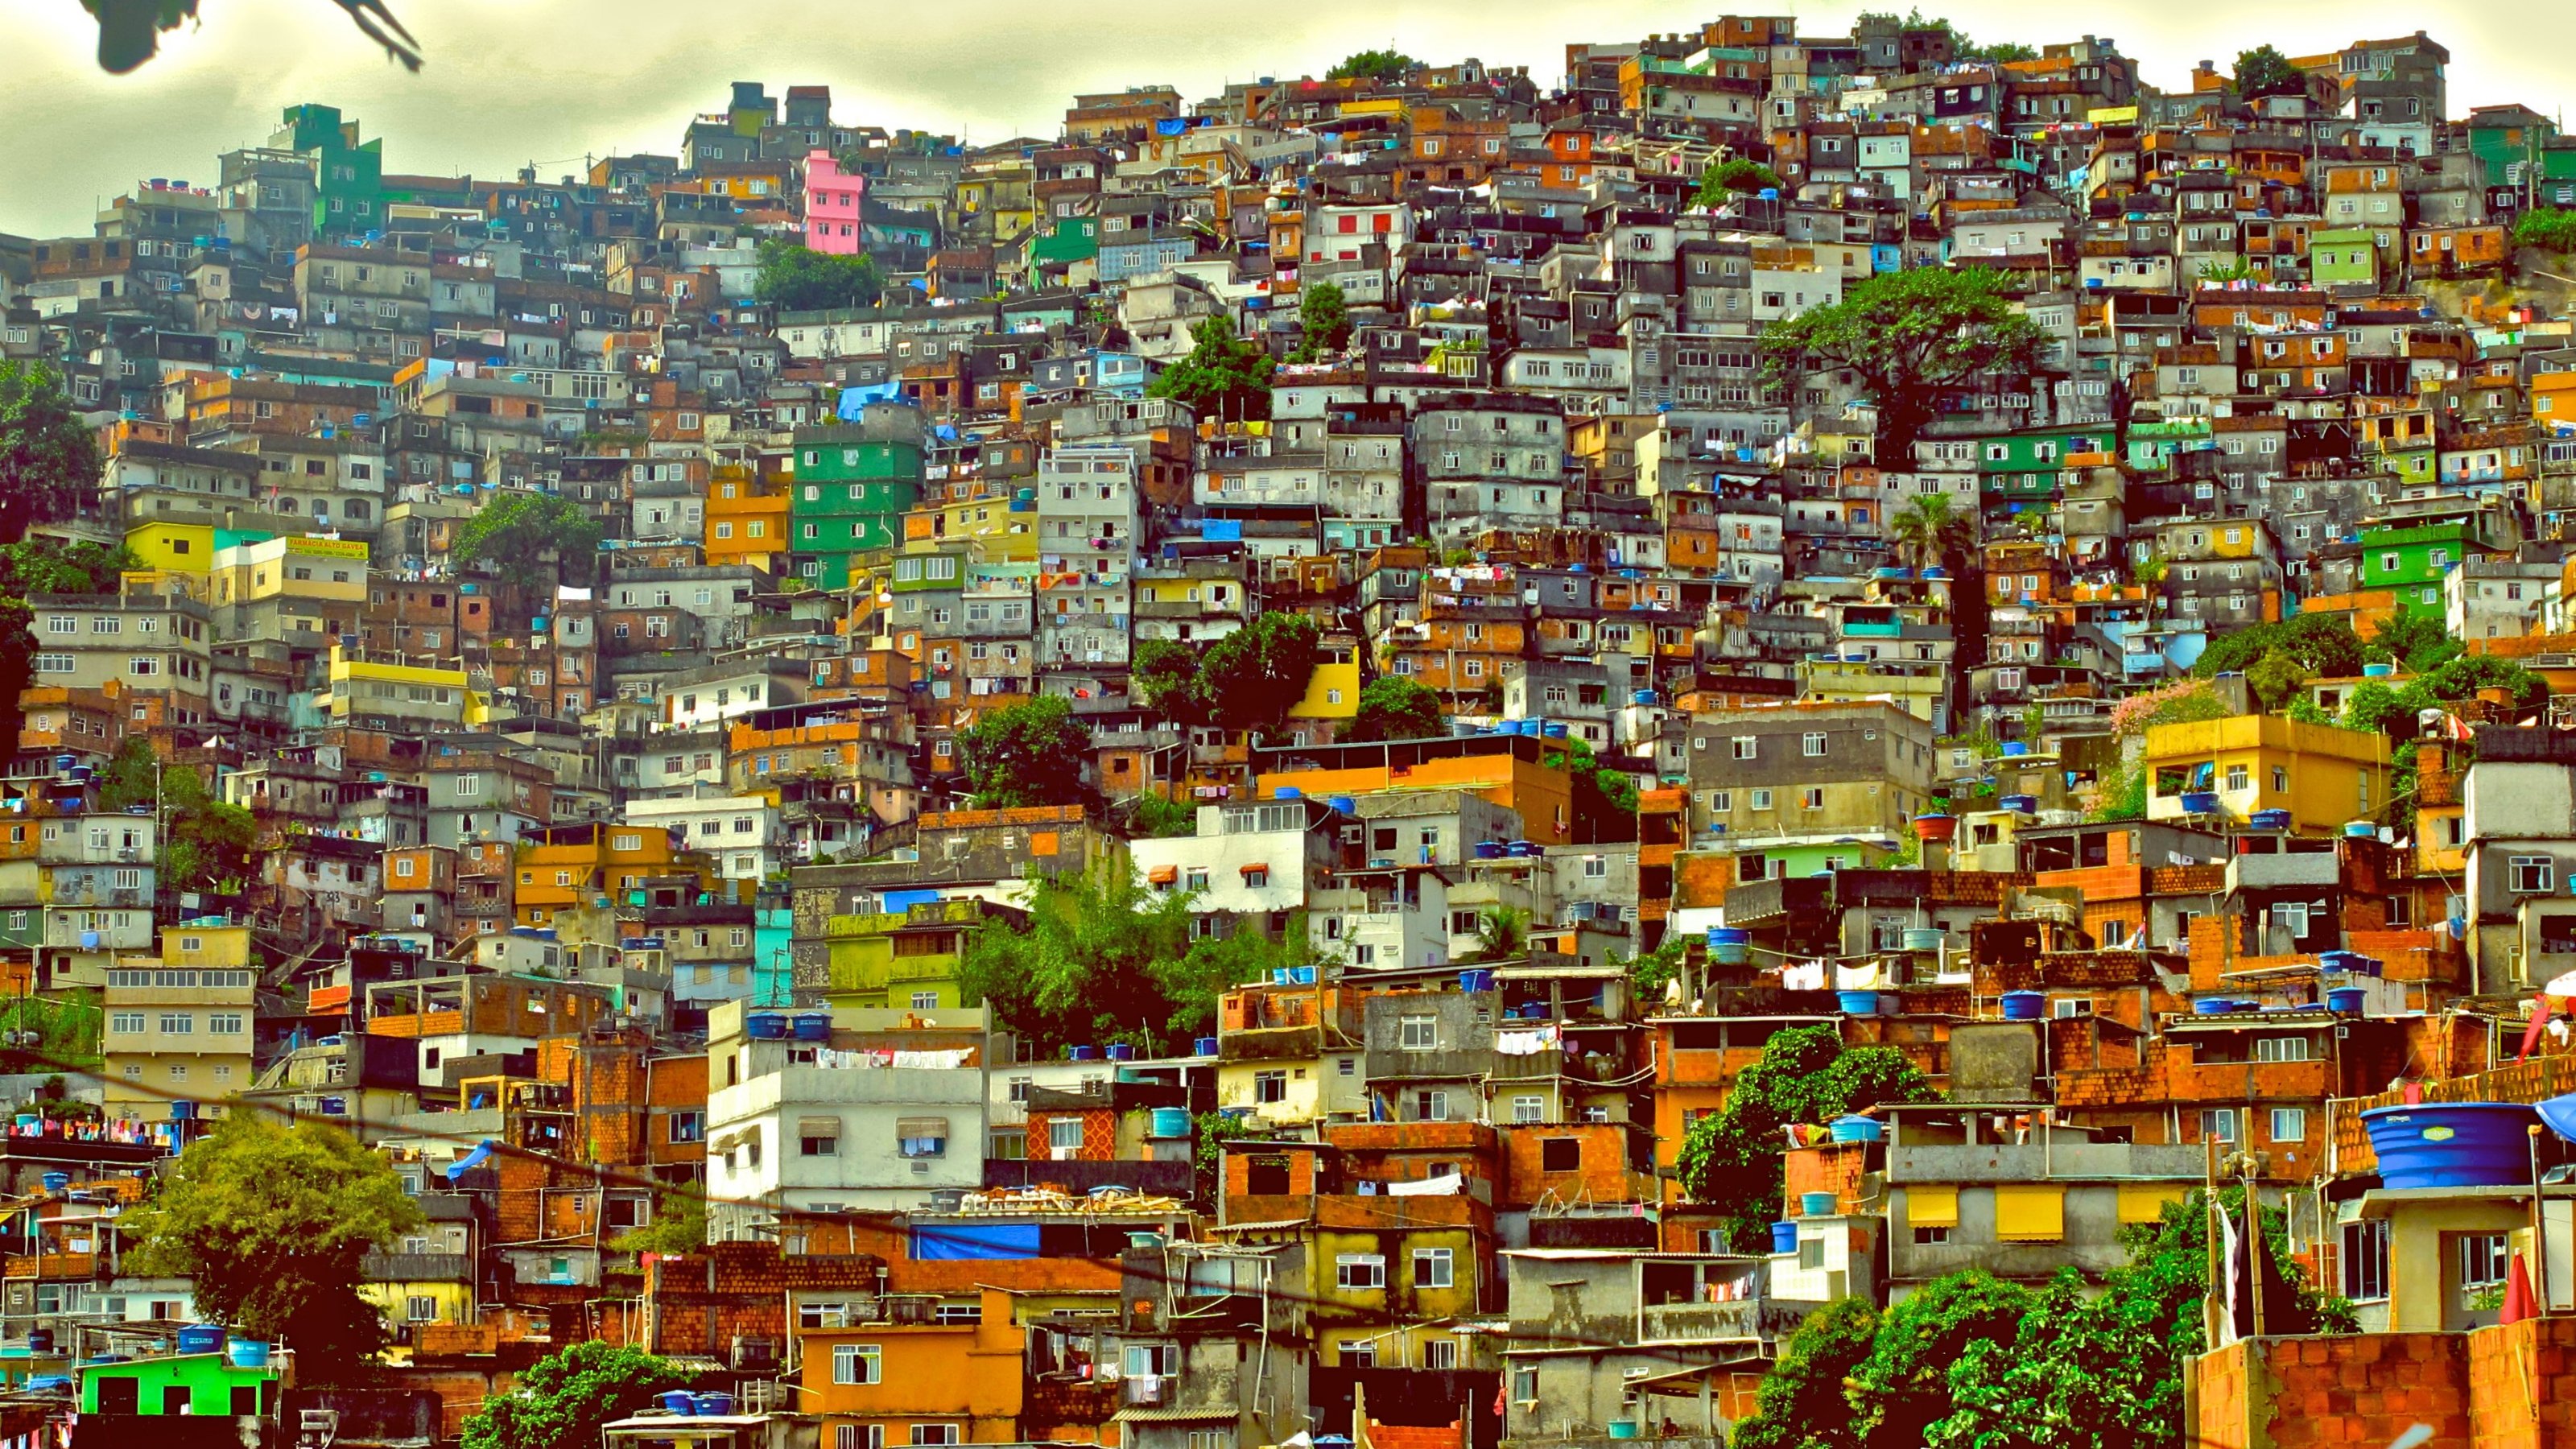 Favela Brazil City House Rio De Janeiro 3200x1800